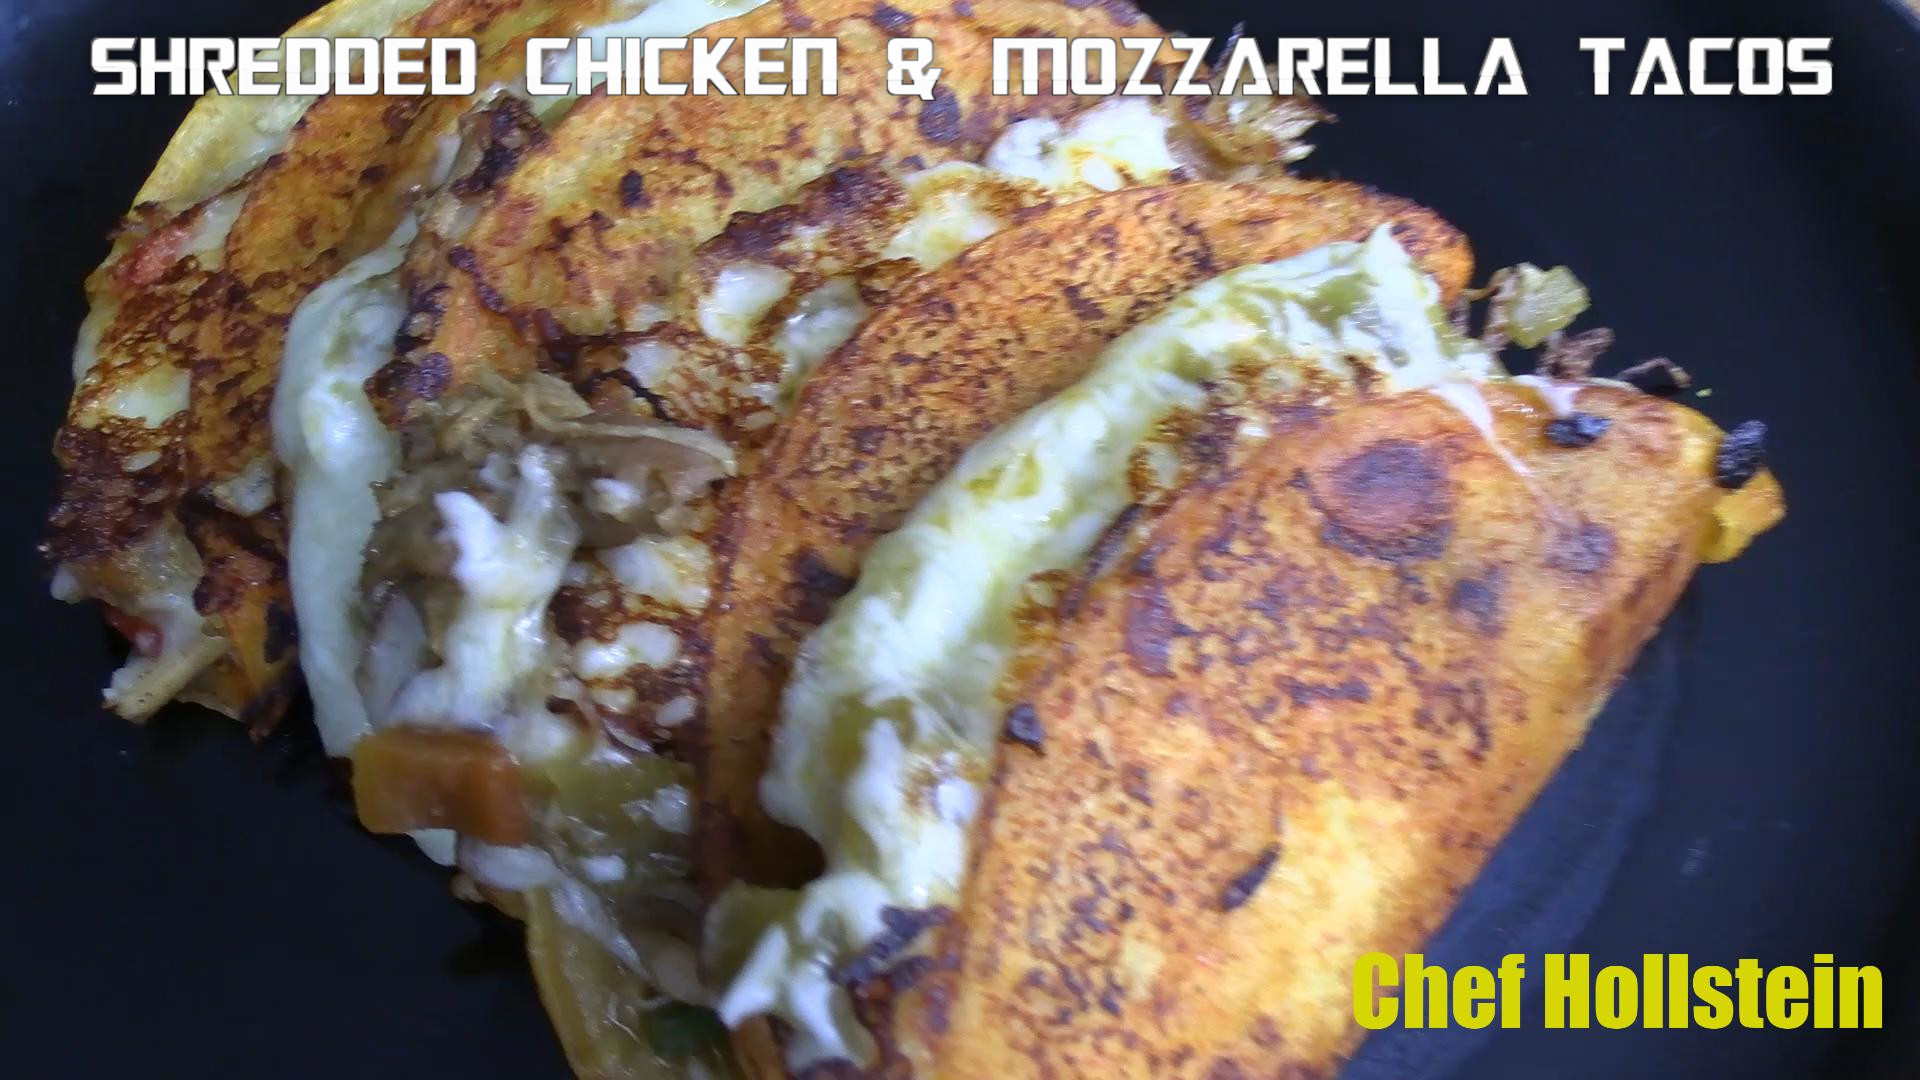 Shredded Chicken & Mozzarella Tacos